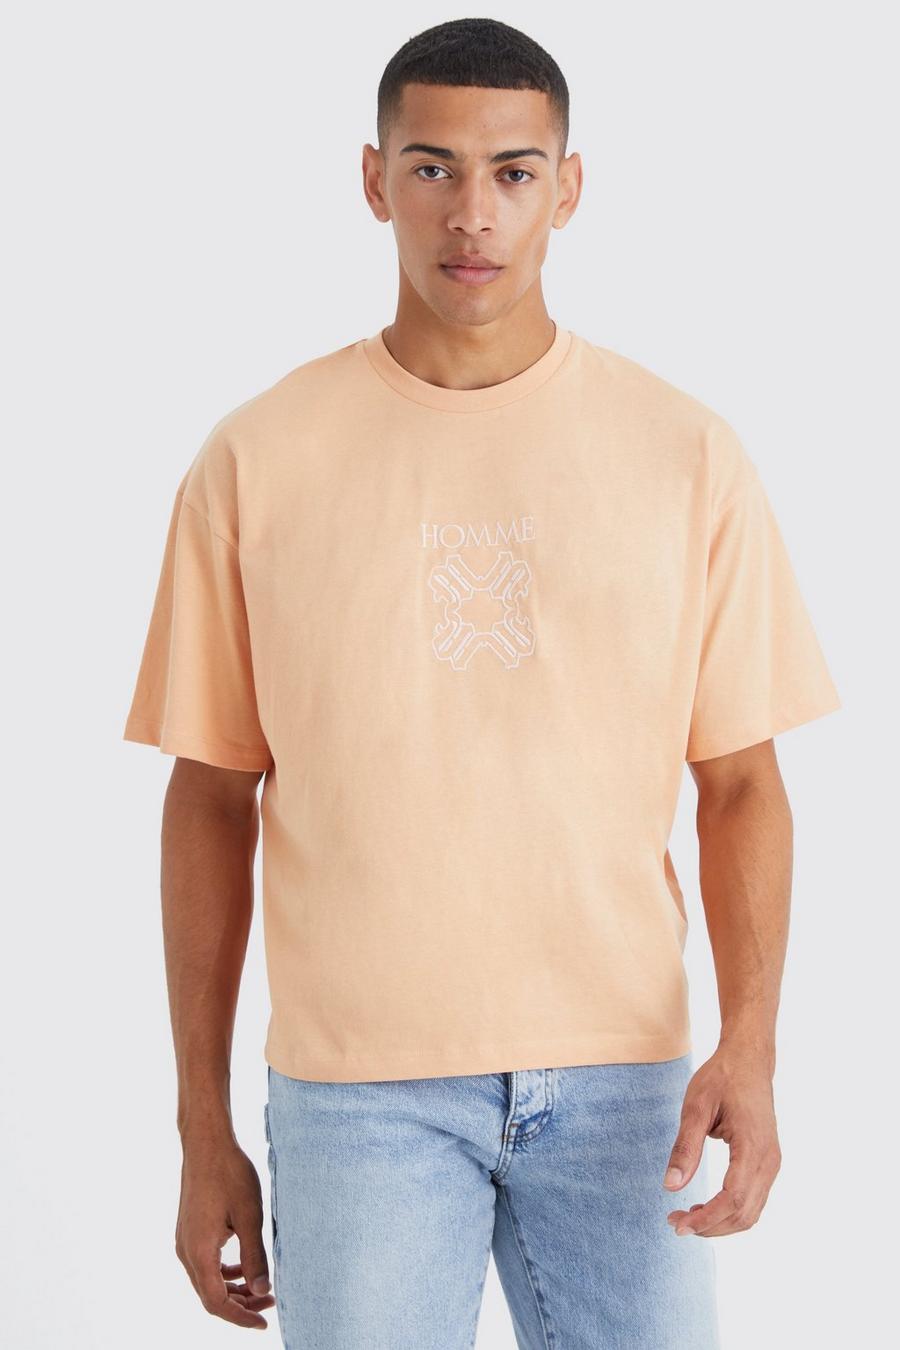 Kastiges T-Shirt mit Homme-Stickerei, Peach